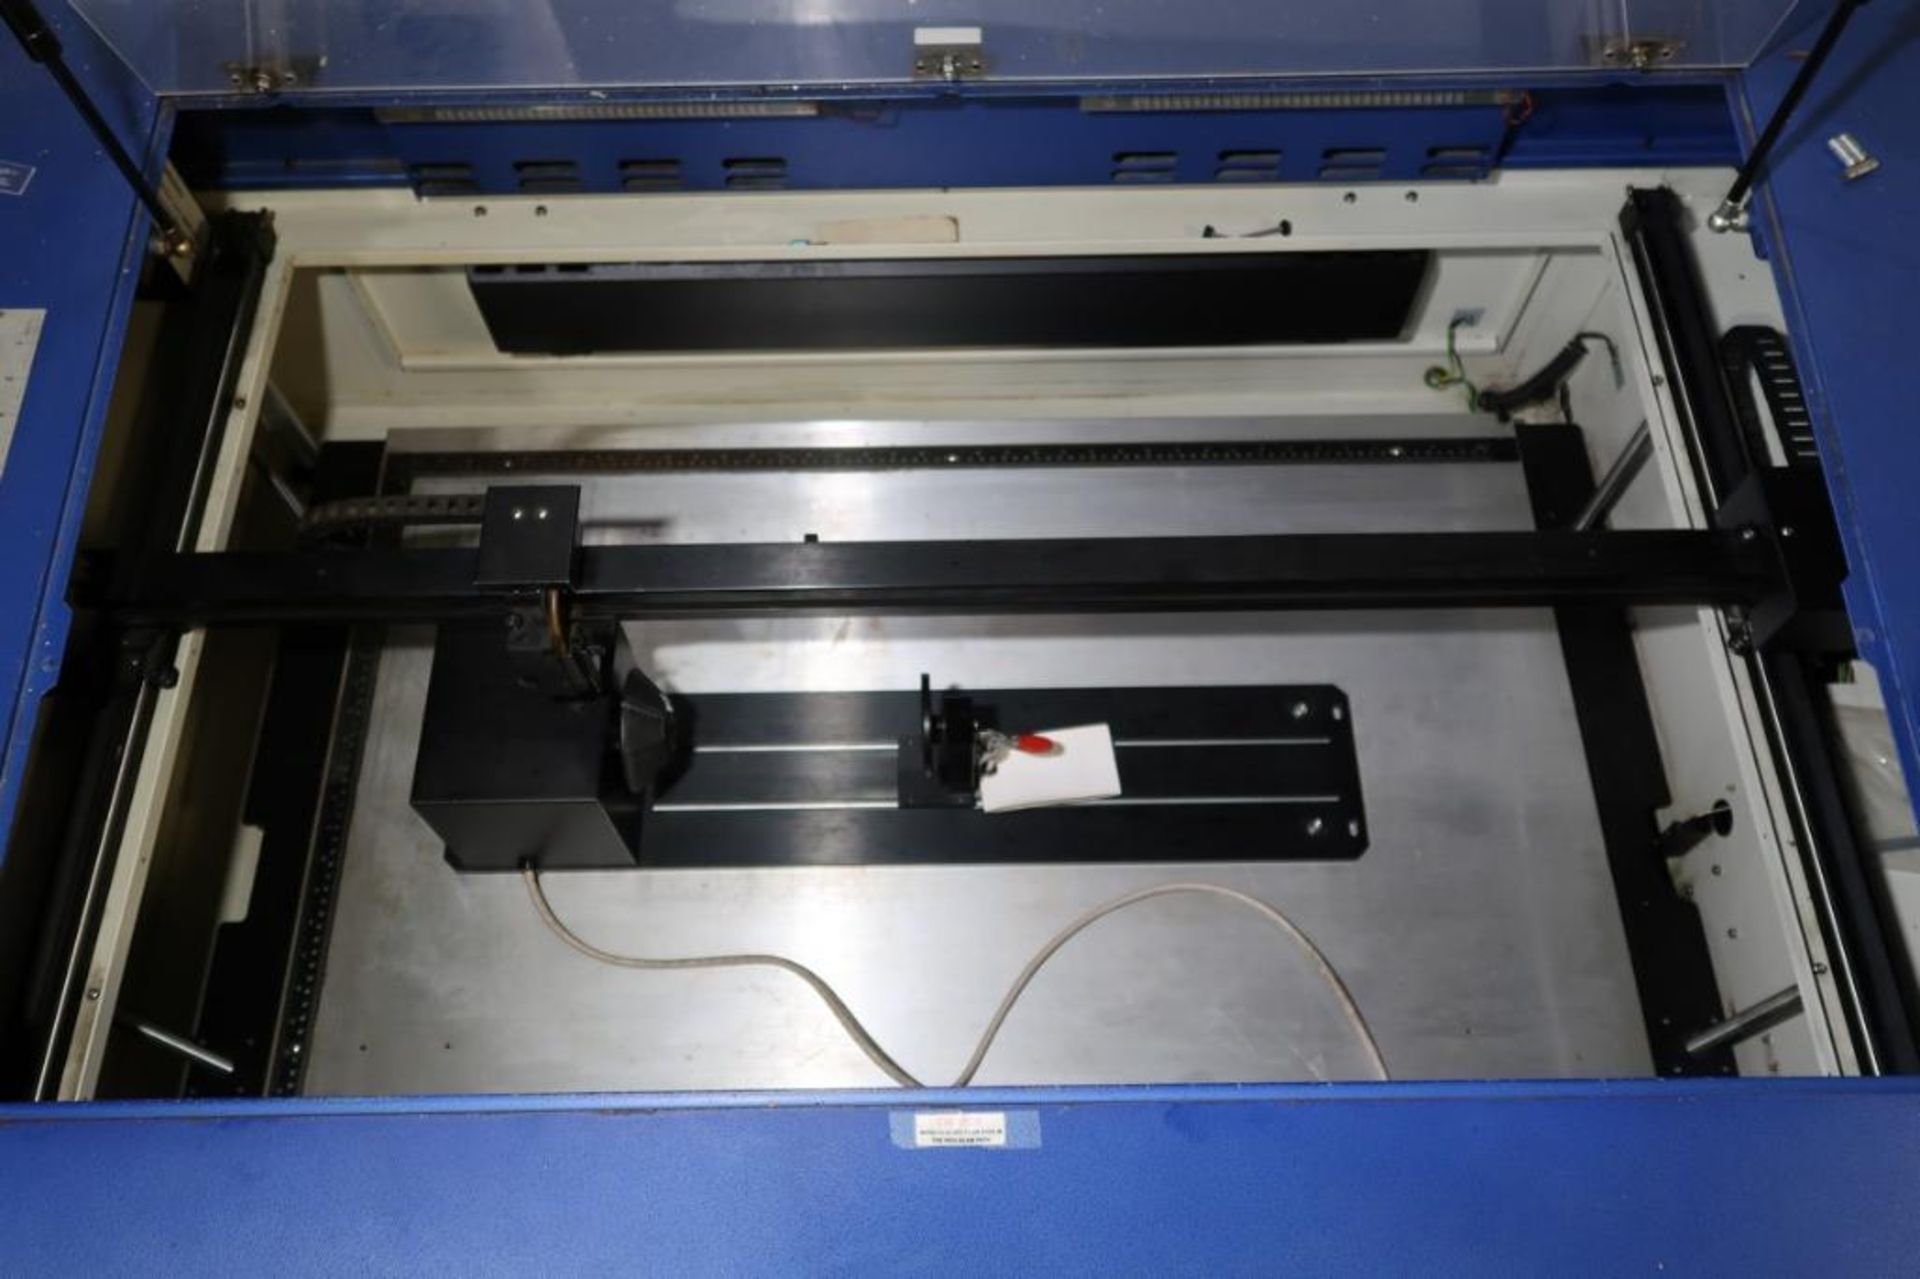 2012 GSC Laser Pro Spirit mdl. GLS-40V Laser Engraving Machine - Image 2 of 6